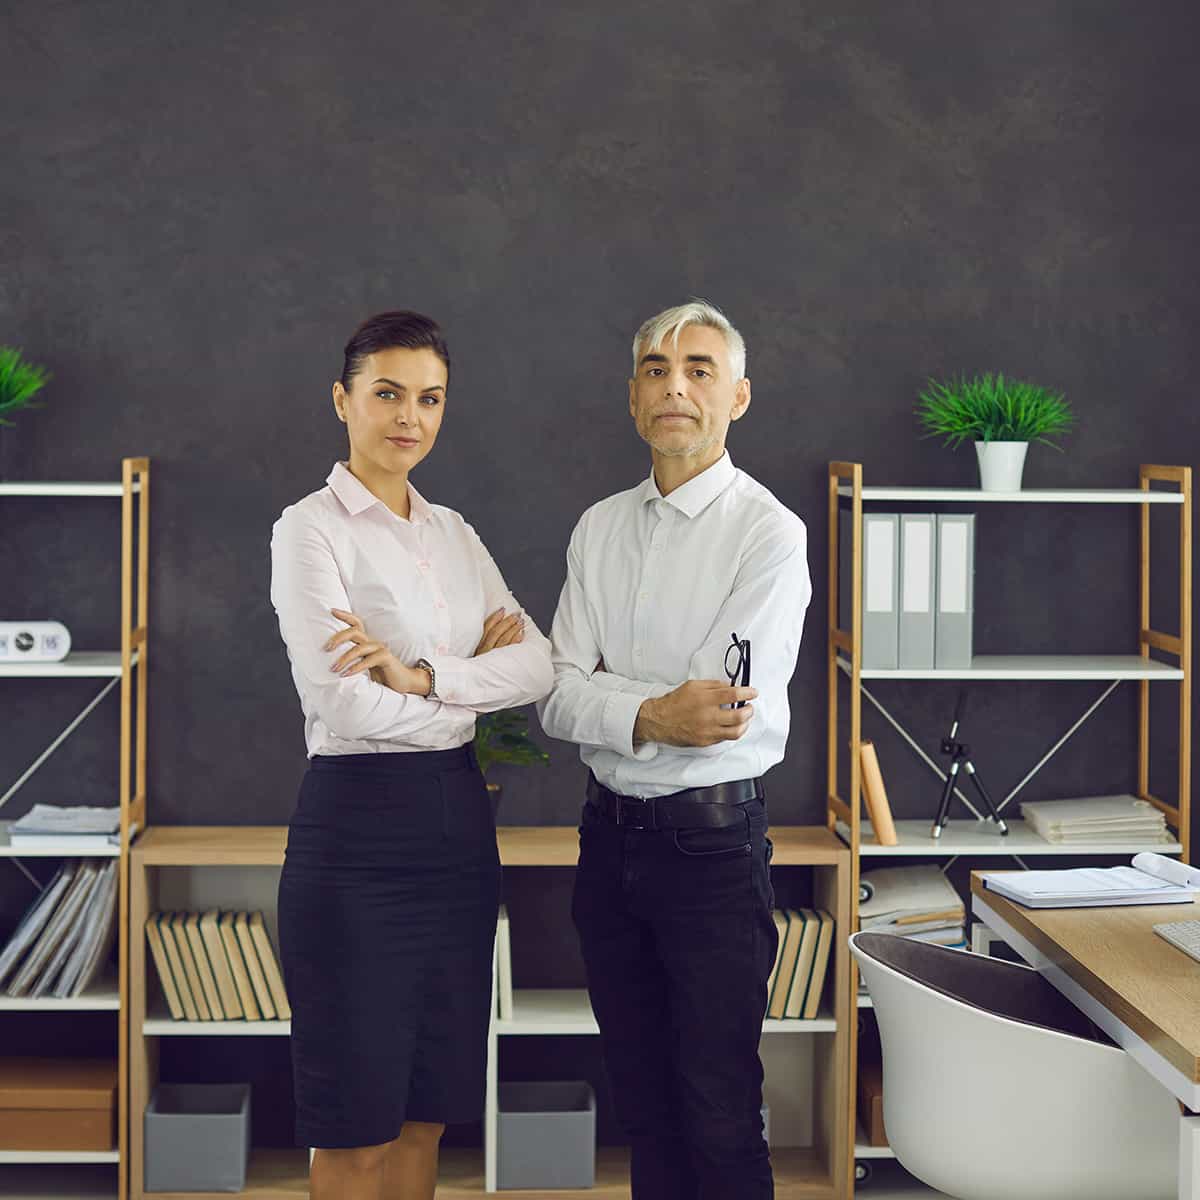 Frau und Mann im Business-Kontext im Büro - junge und ältere Generation